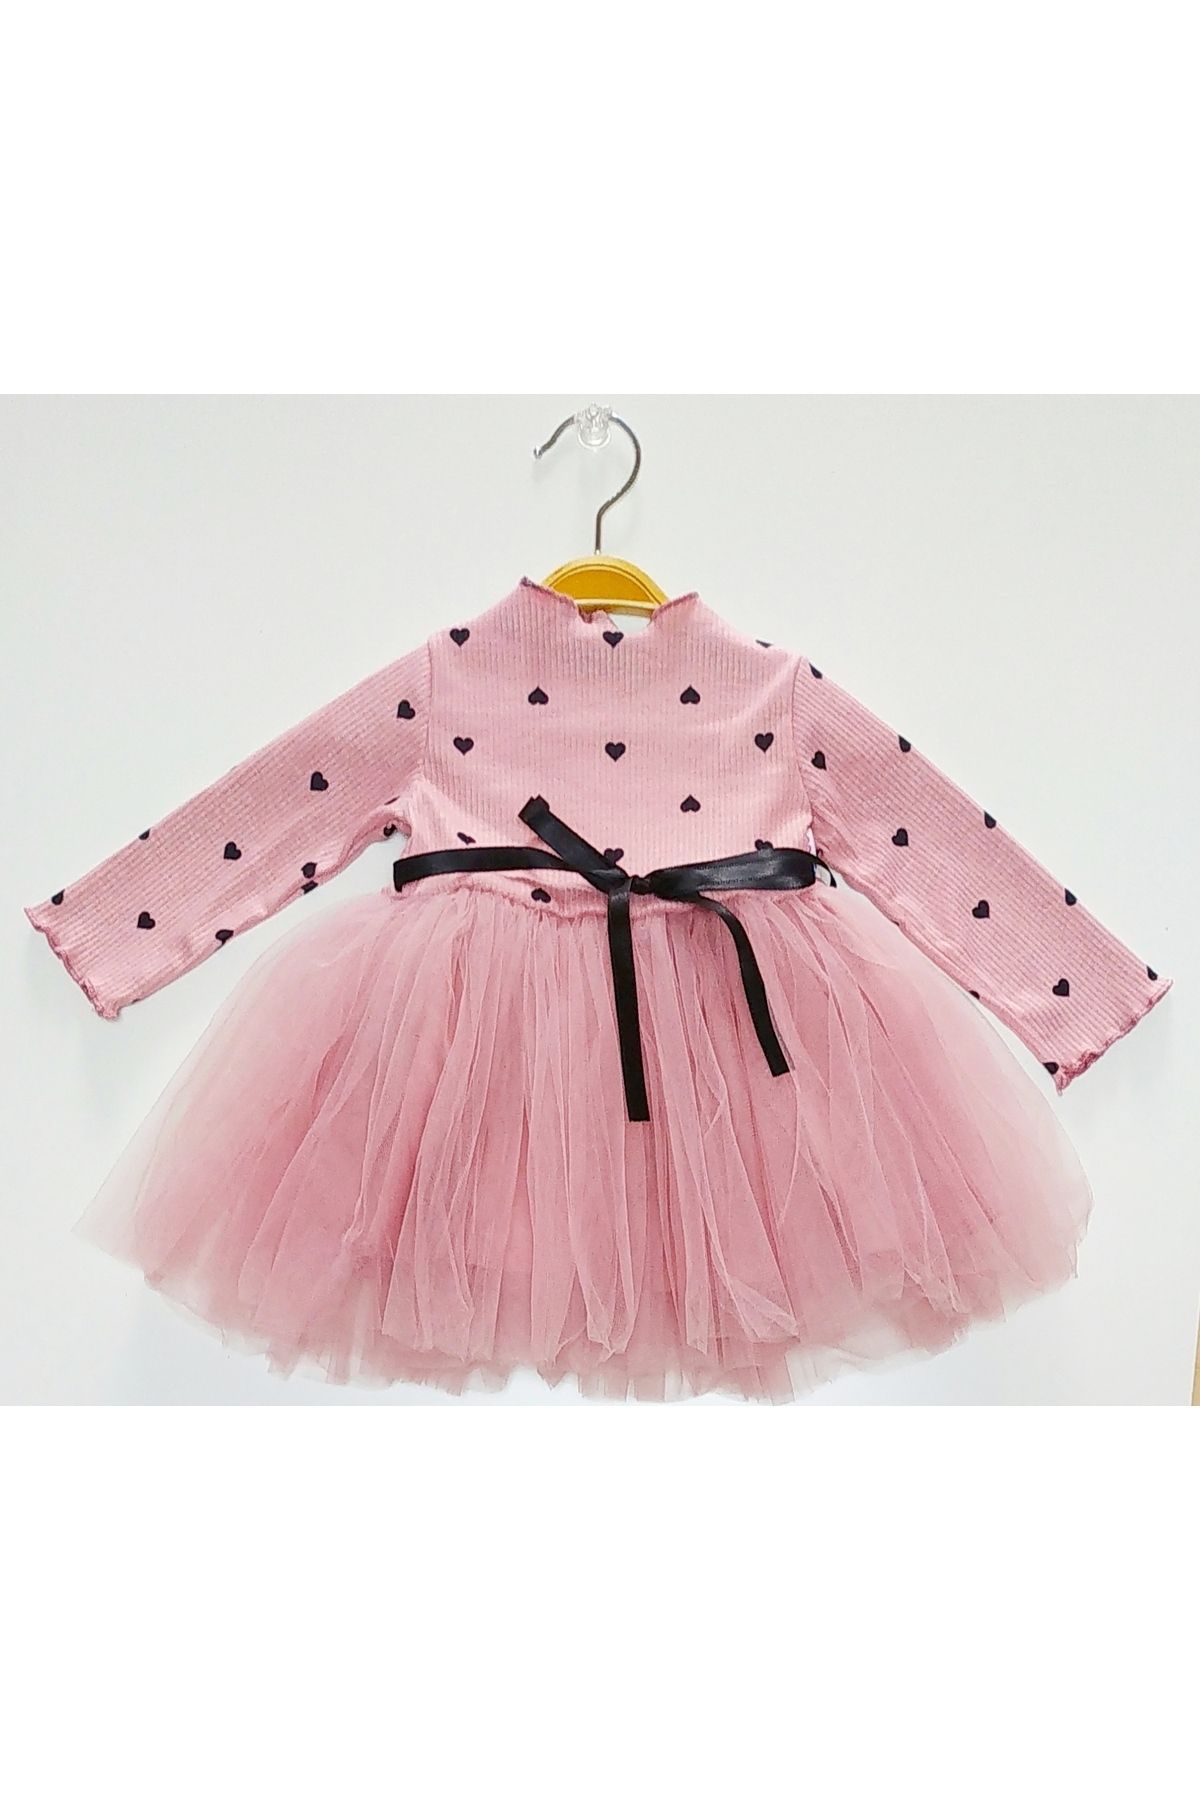 neocotton Kız Bebek-Çocuk Uzun Kollu Doğum Günü ve Özel Günler İçin Kalpli Tüllü Astarlı Elbise